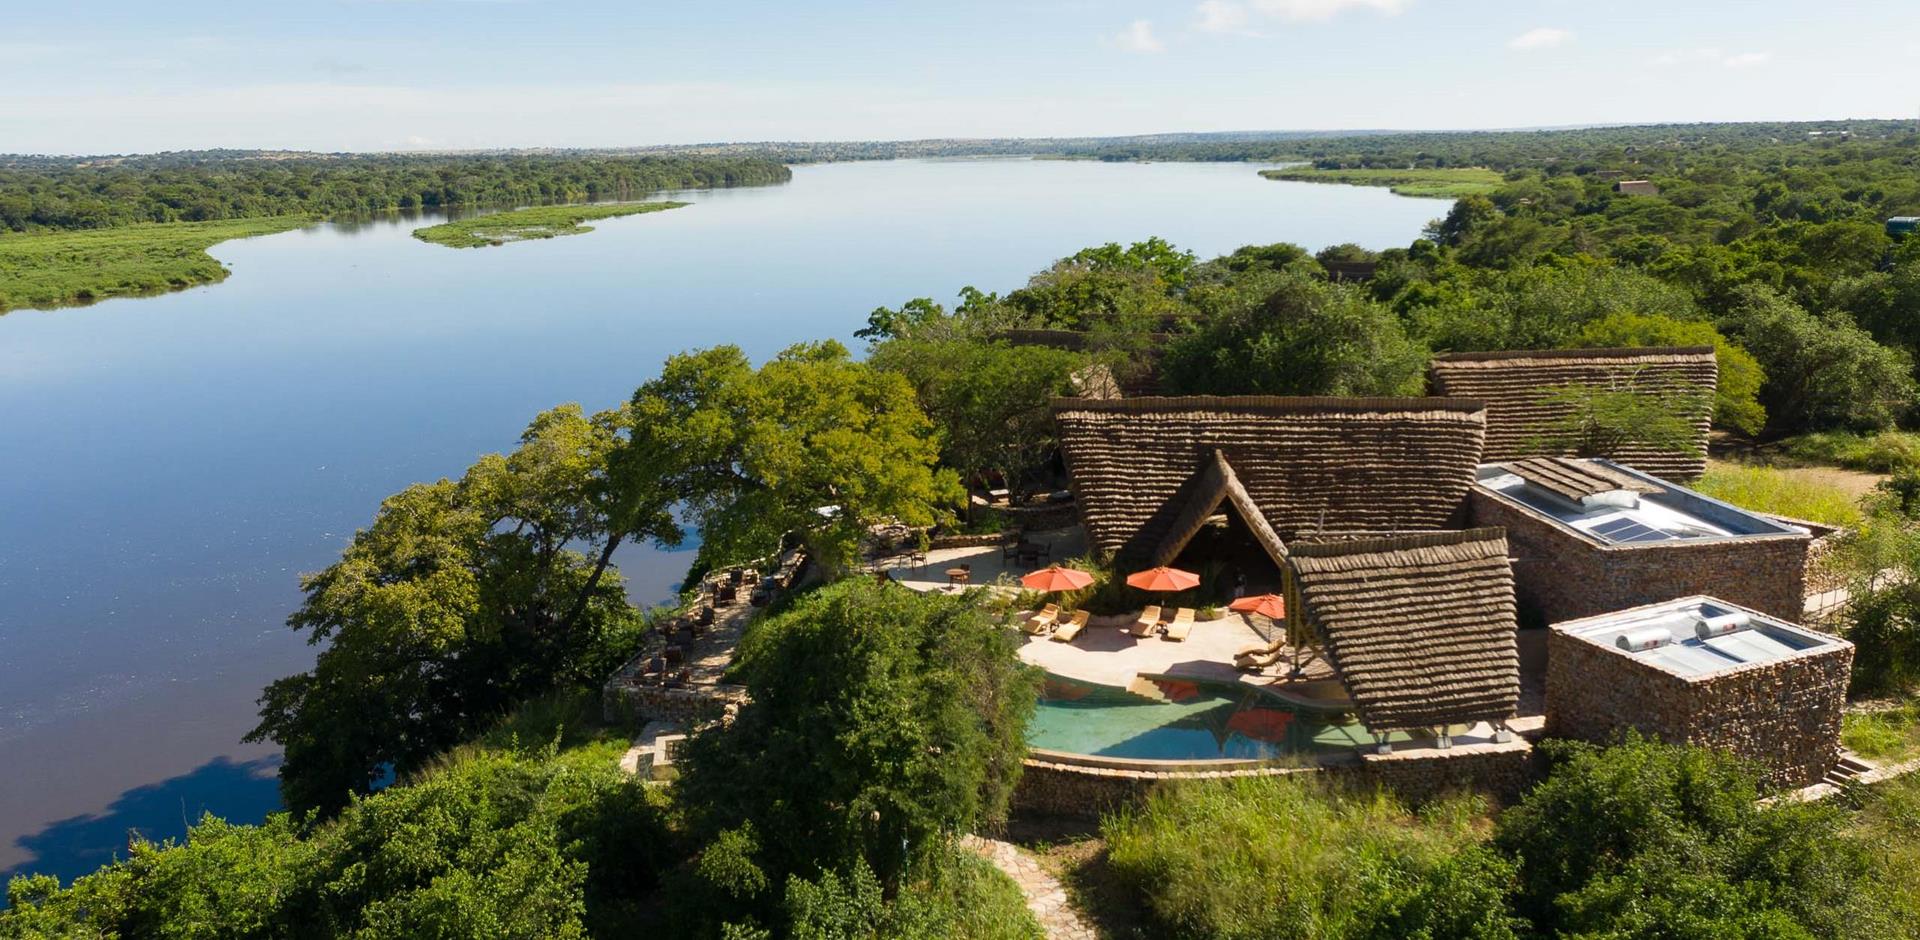 Aerial view, Nile Safari Lodge, Uganda